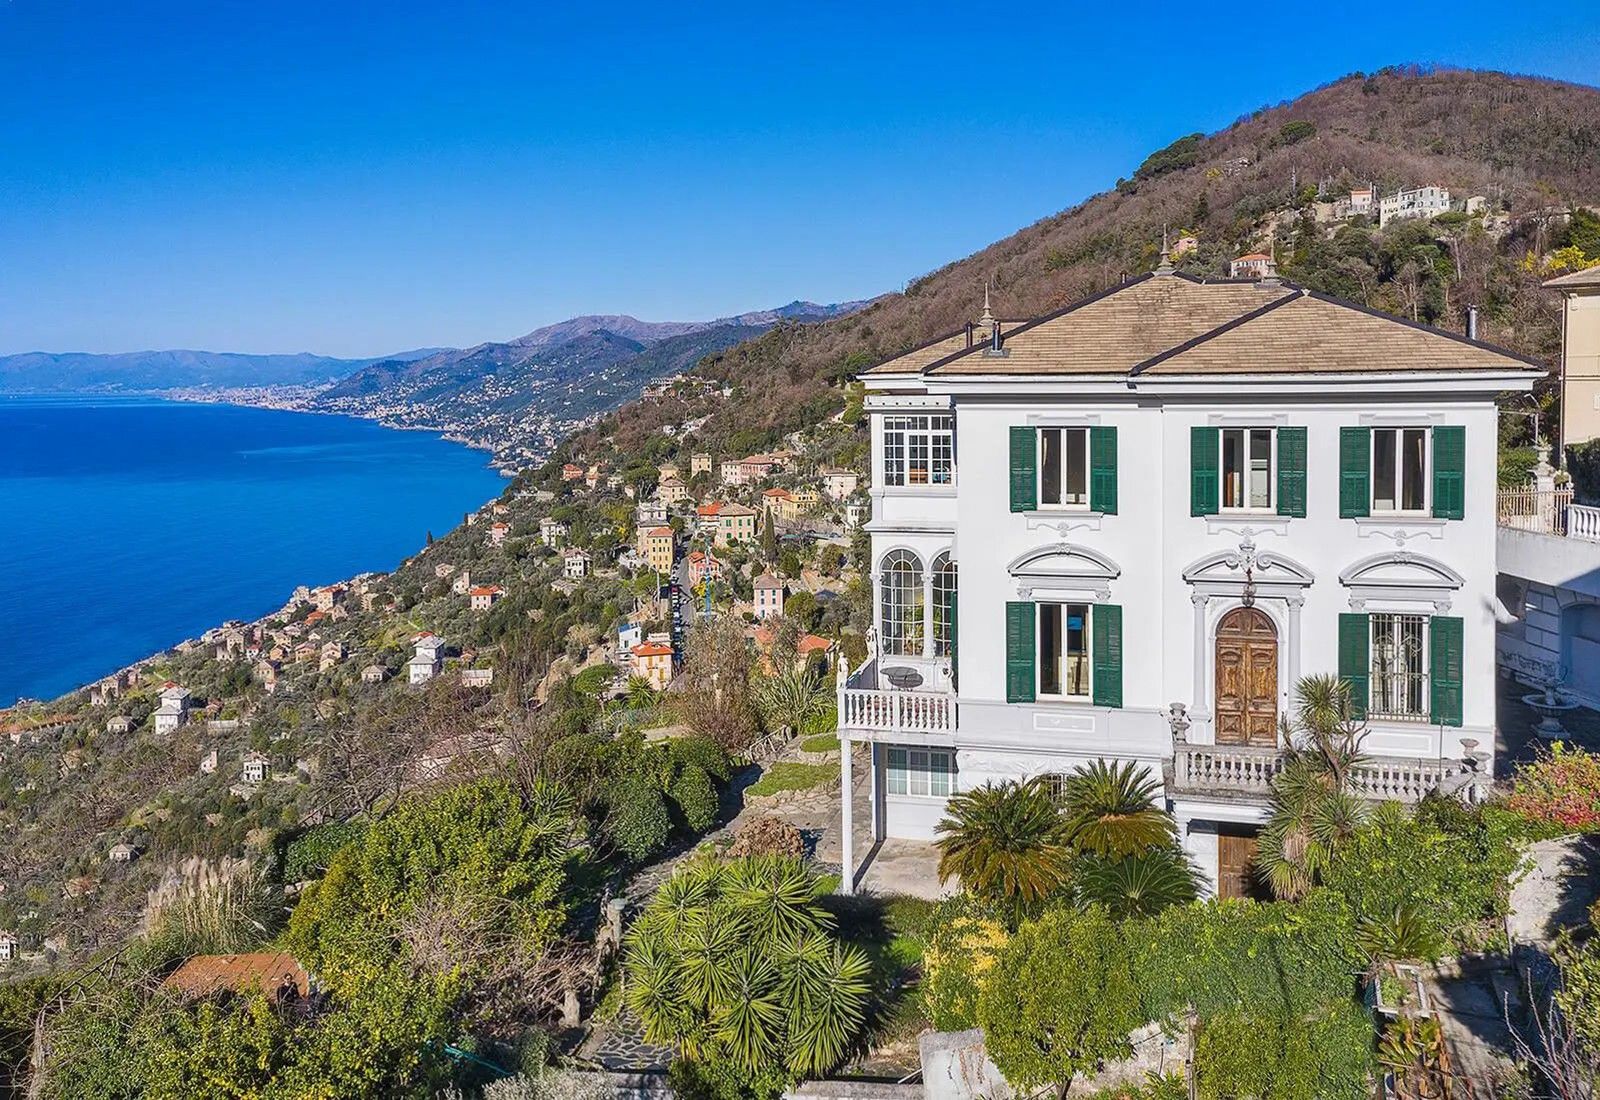 Fotky Exkluzívna historická vila v Ligúrii s fantastickým výhľadom na more